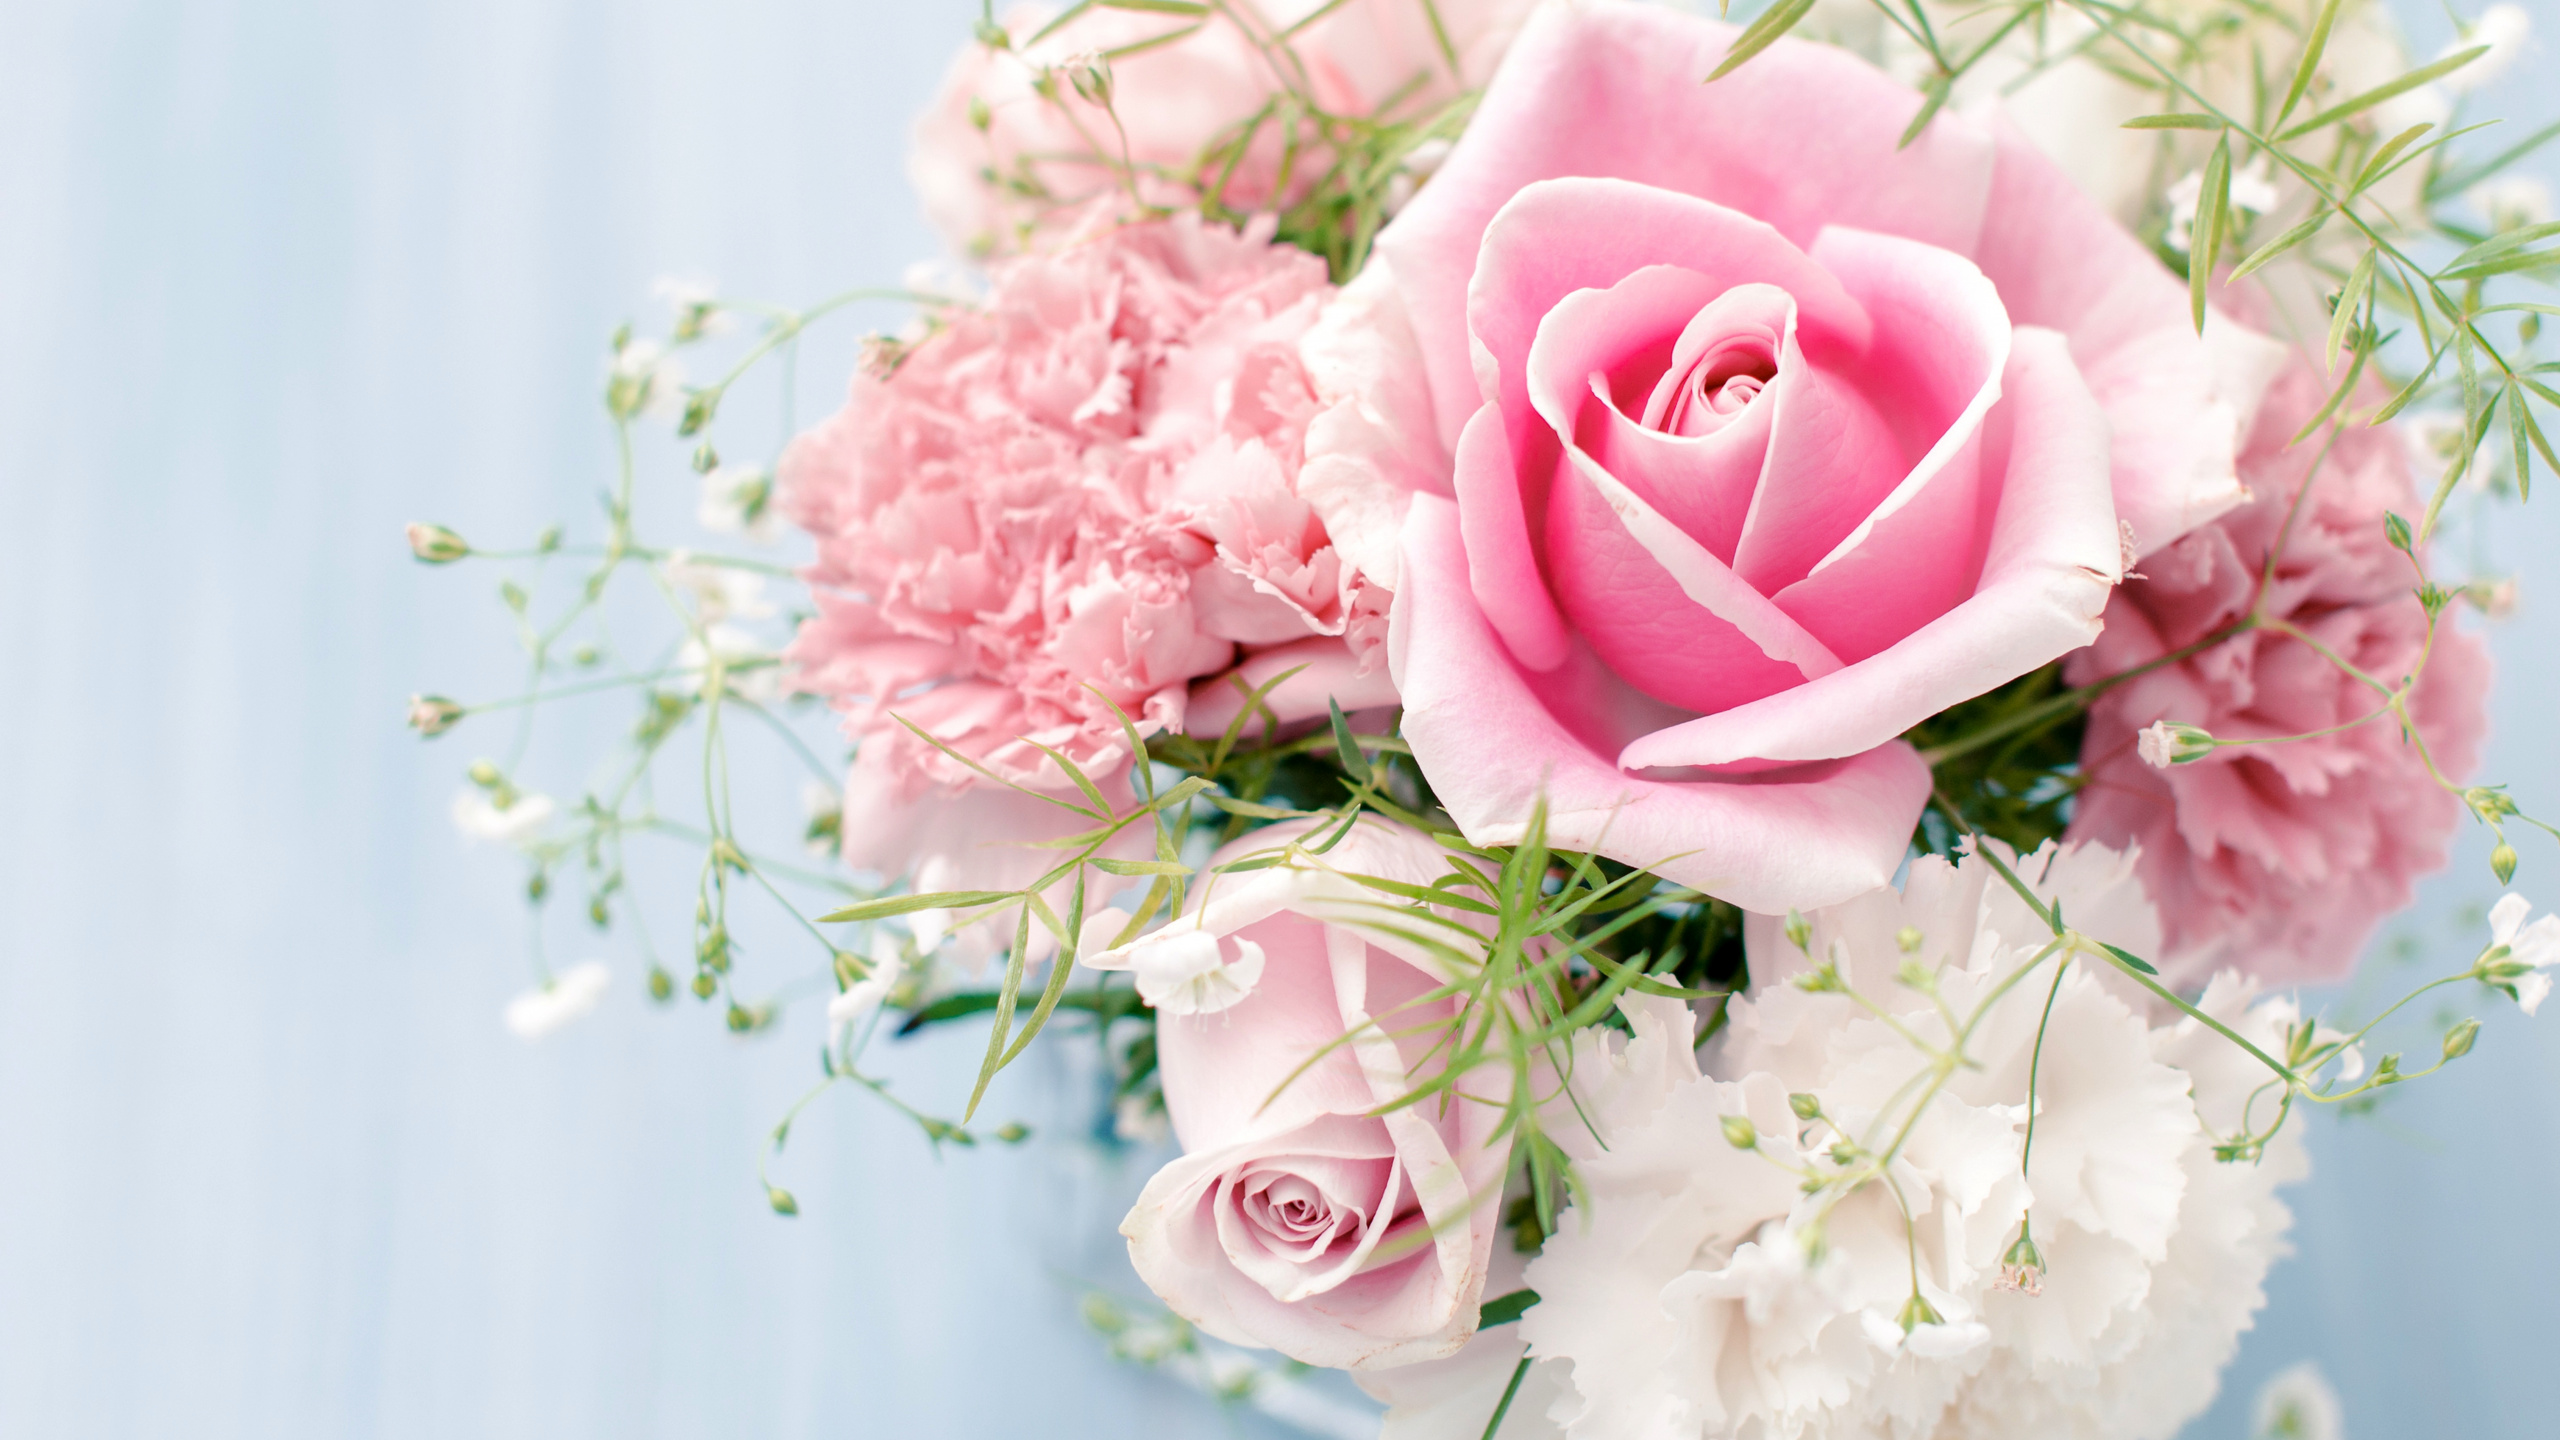 Обои Роза, цветочный букет, розовые цветы, розовый, сад роз в разрешении 2560x1440